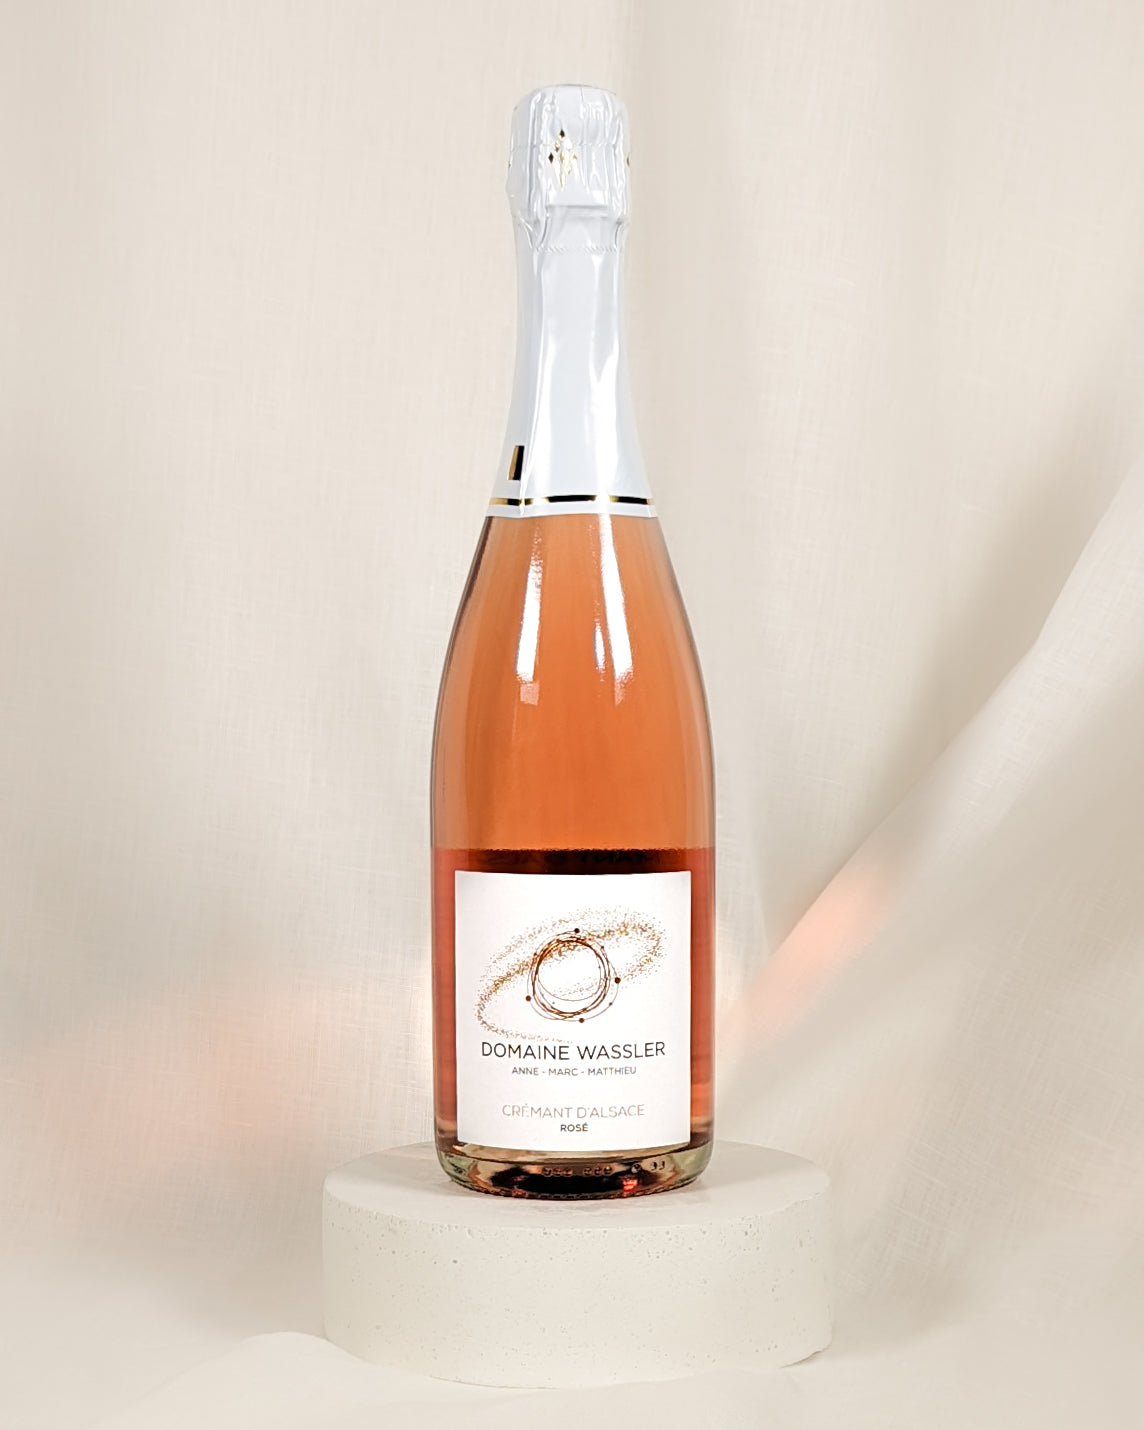 Produktfoto eines Cremant d'Alsace Rosé der Domaine Wassler